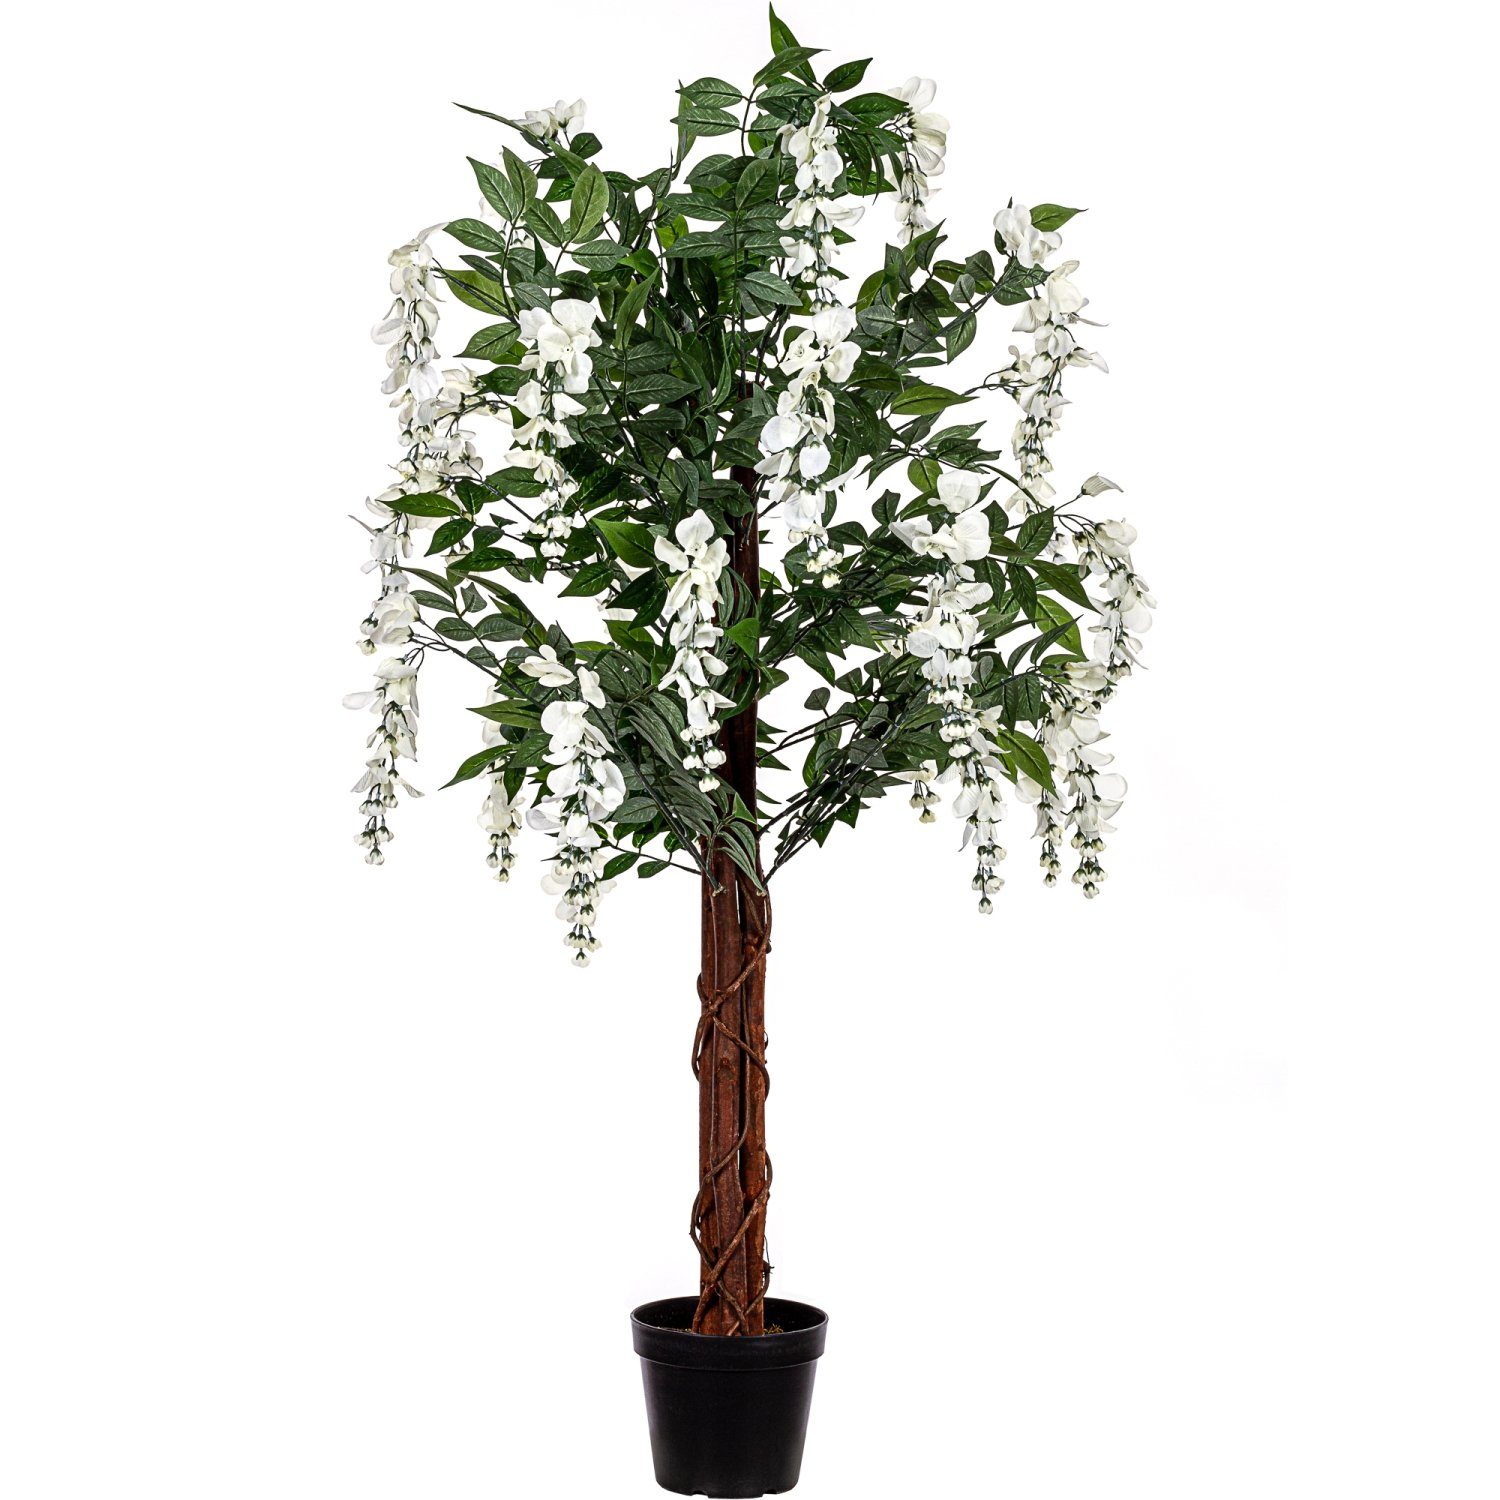 Kunstblume Künstlicher Wisteria Baum Blauregen Kunstpflanze Wisteria, PLANTASIA, Höhe 120,00 cm, 756 Blätter, Echtholzstamm, Creme Blüten